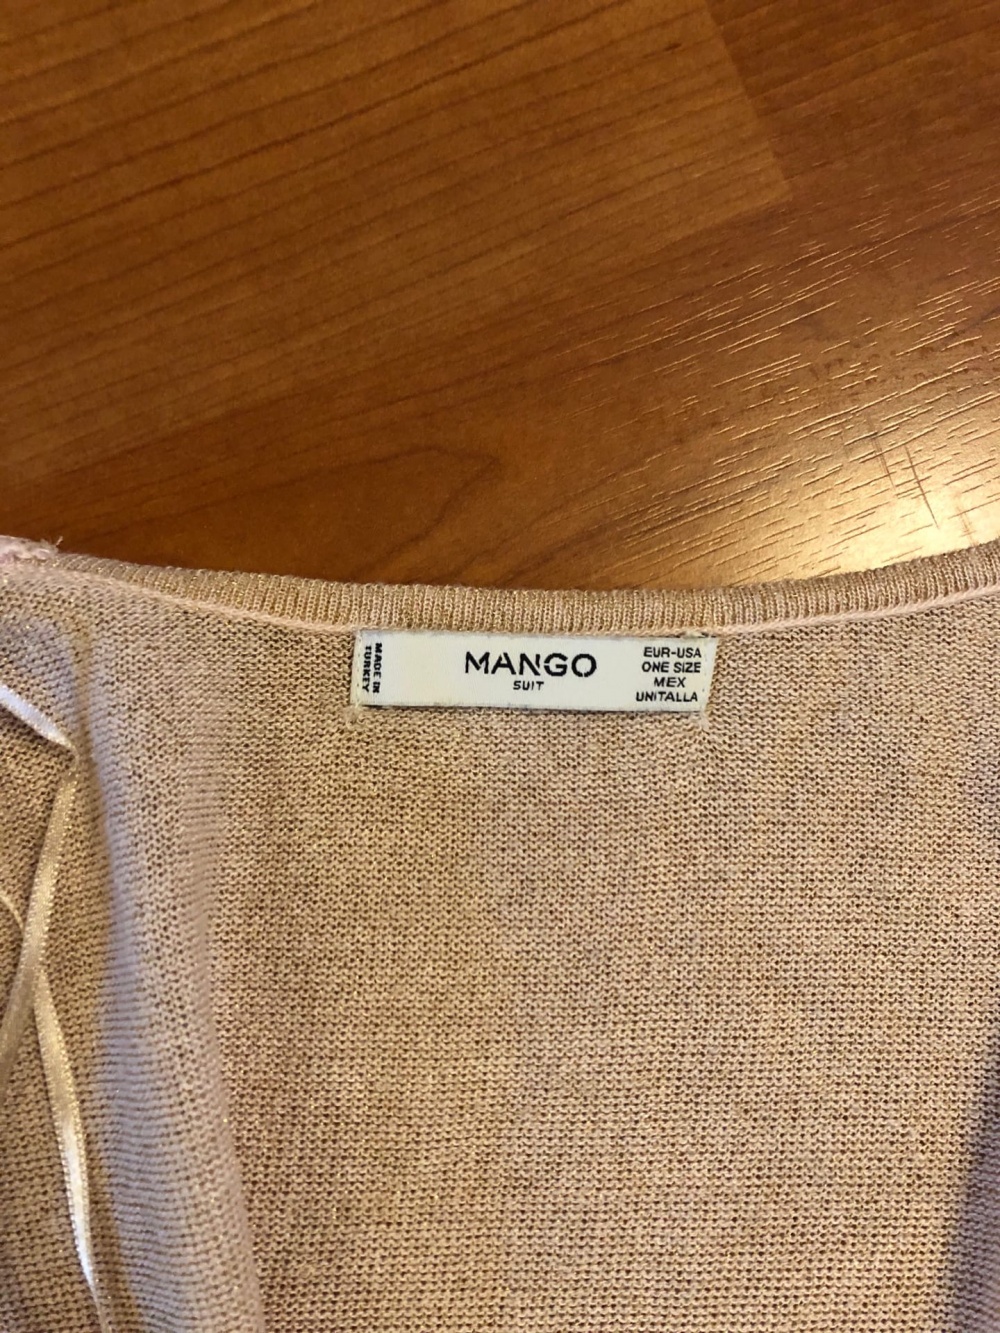 Комплект вещей MANGO, топ накидка платье, размер S